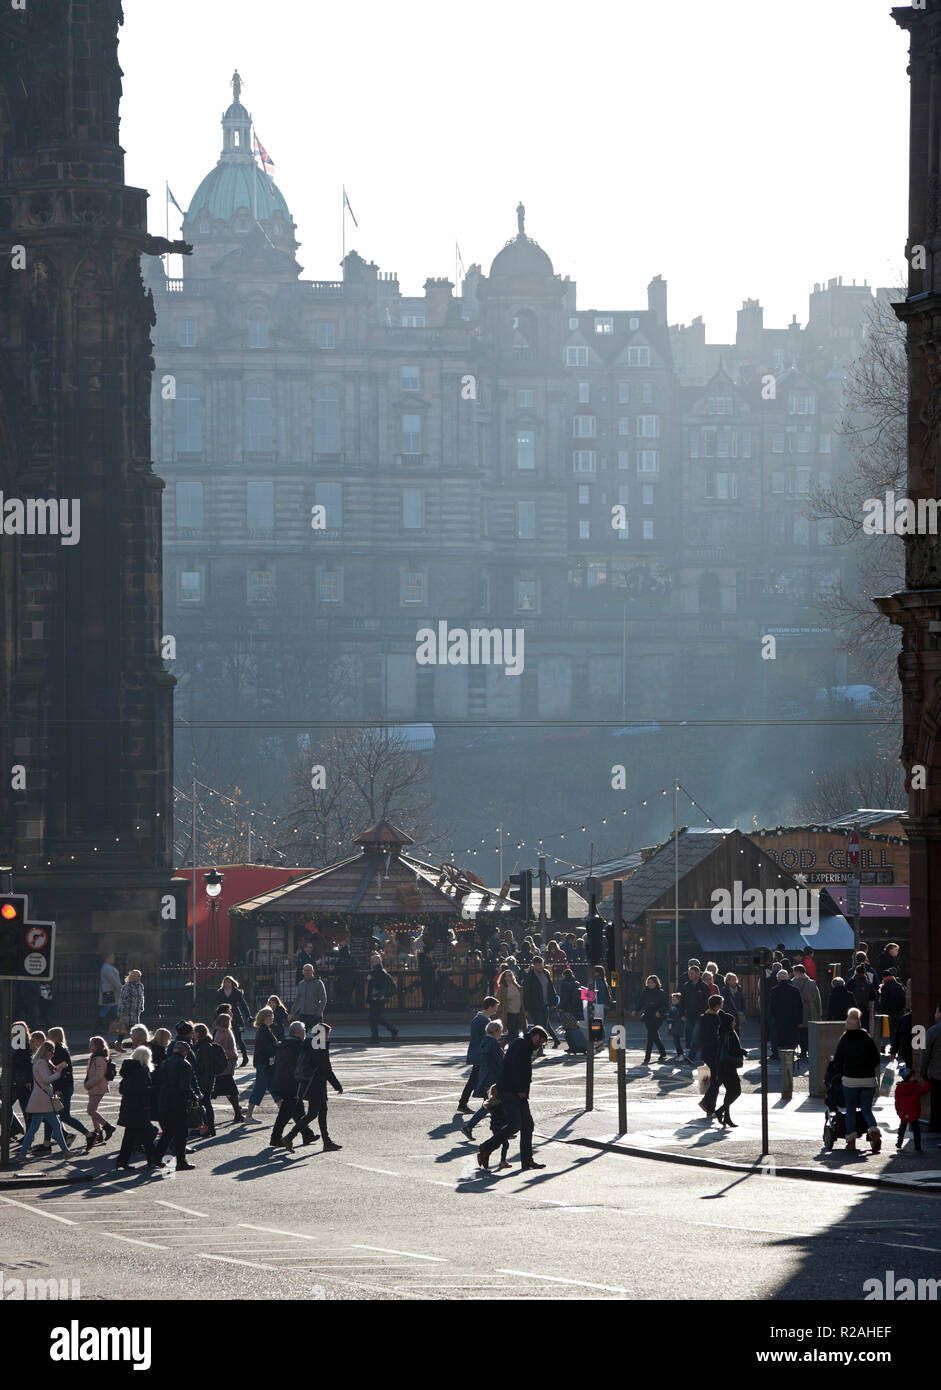 Edinburgh, Schottland. 18 Nov. 2018. UK Wetter, Sonnenschein und Nebel im Hintergrund, Temperatur um 6 Grad in der schottischen Hauptstadt die Princes Street mit belebten Straßen in der Innenstadt. Stockfoto